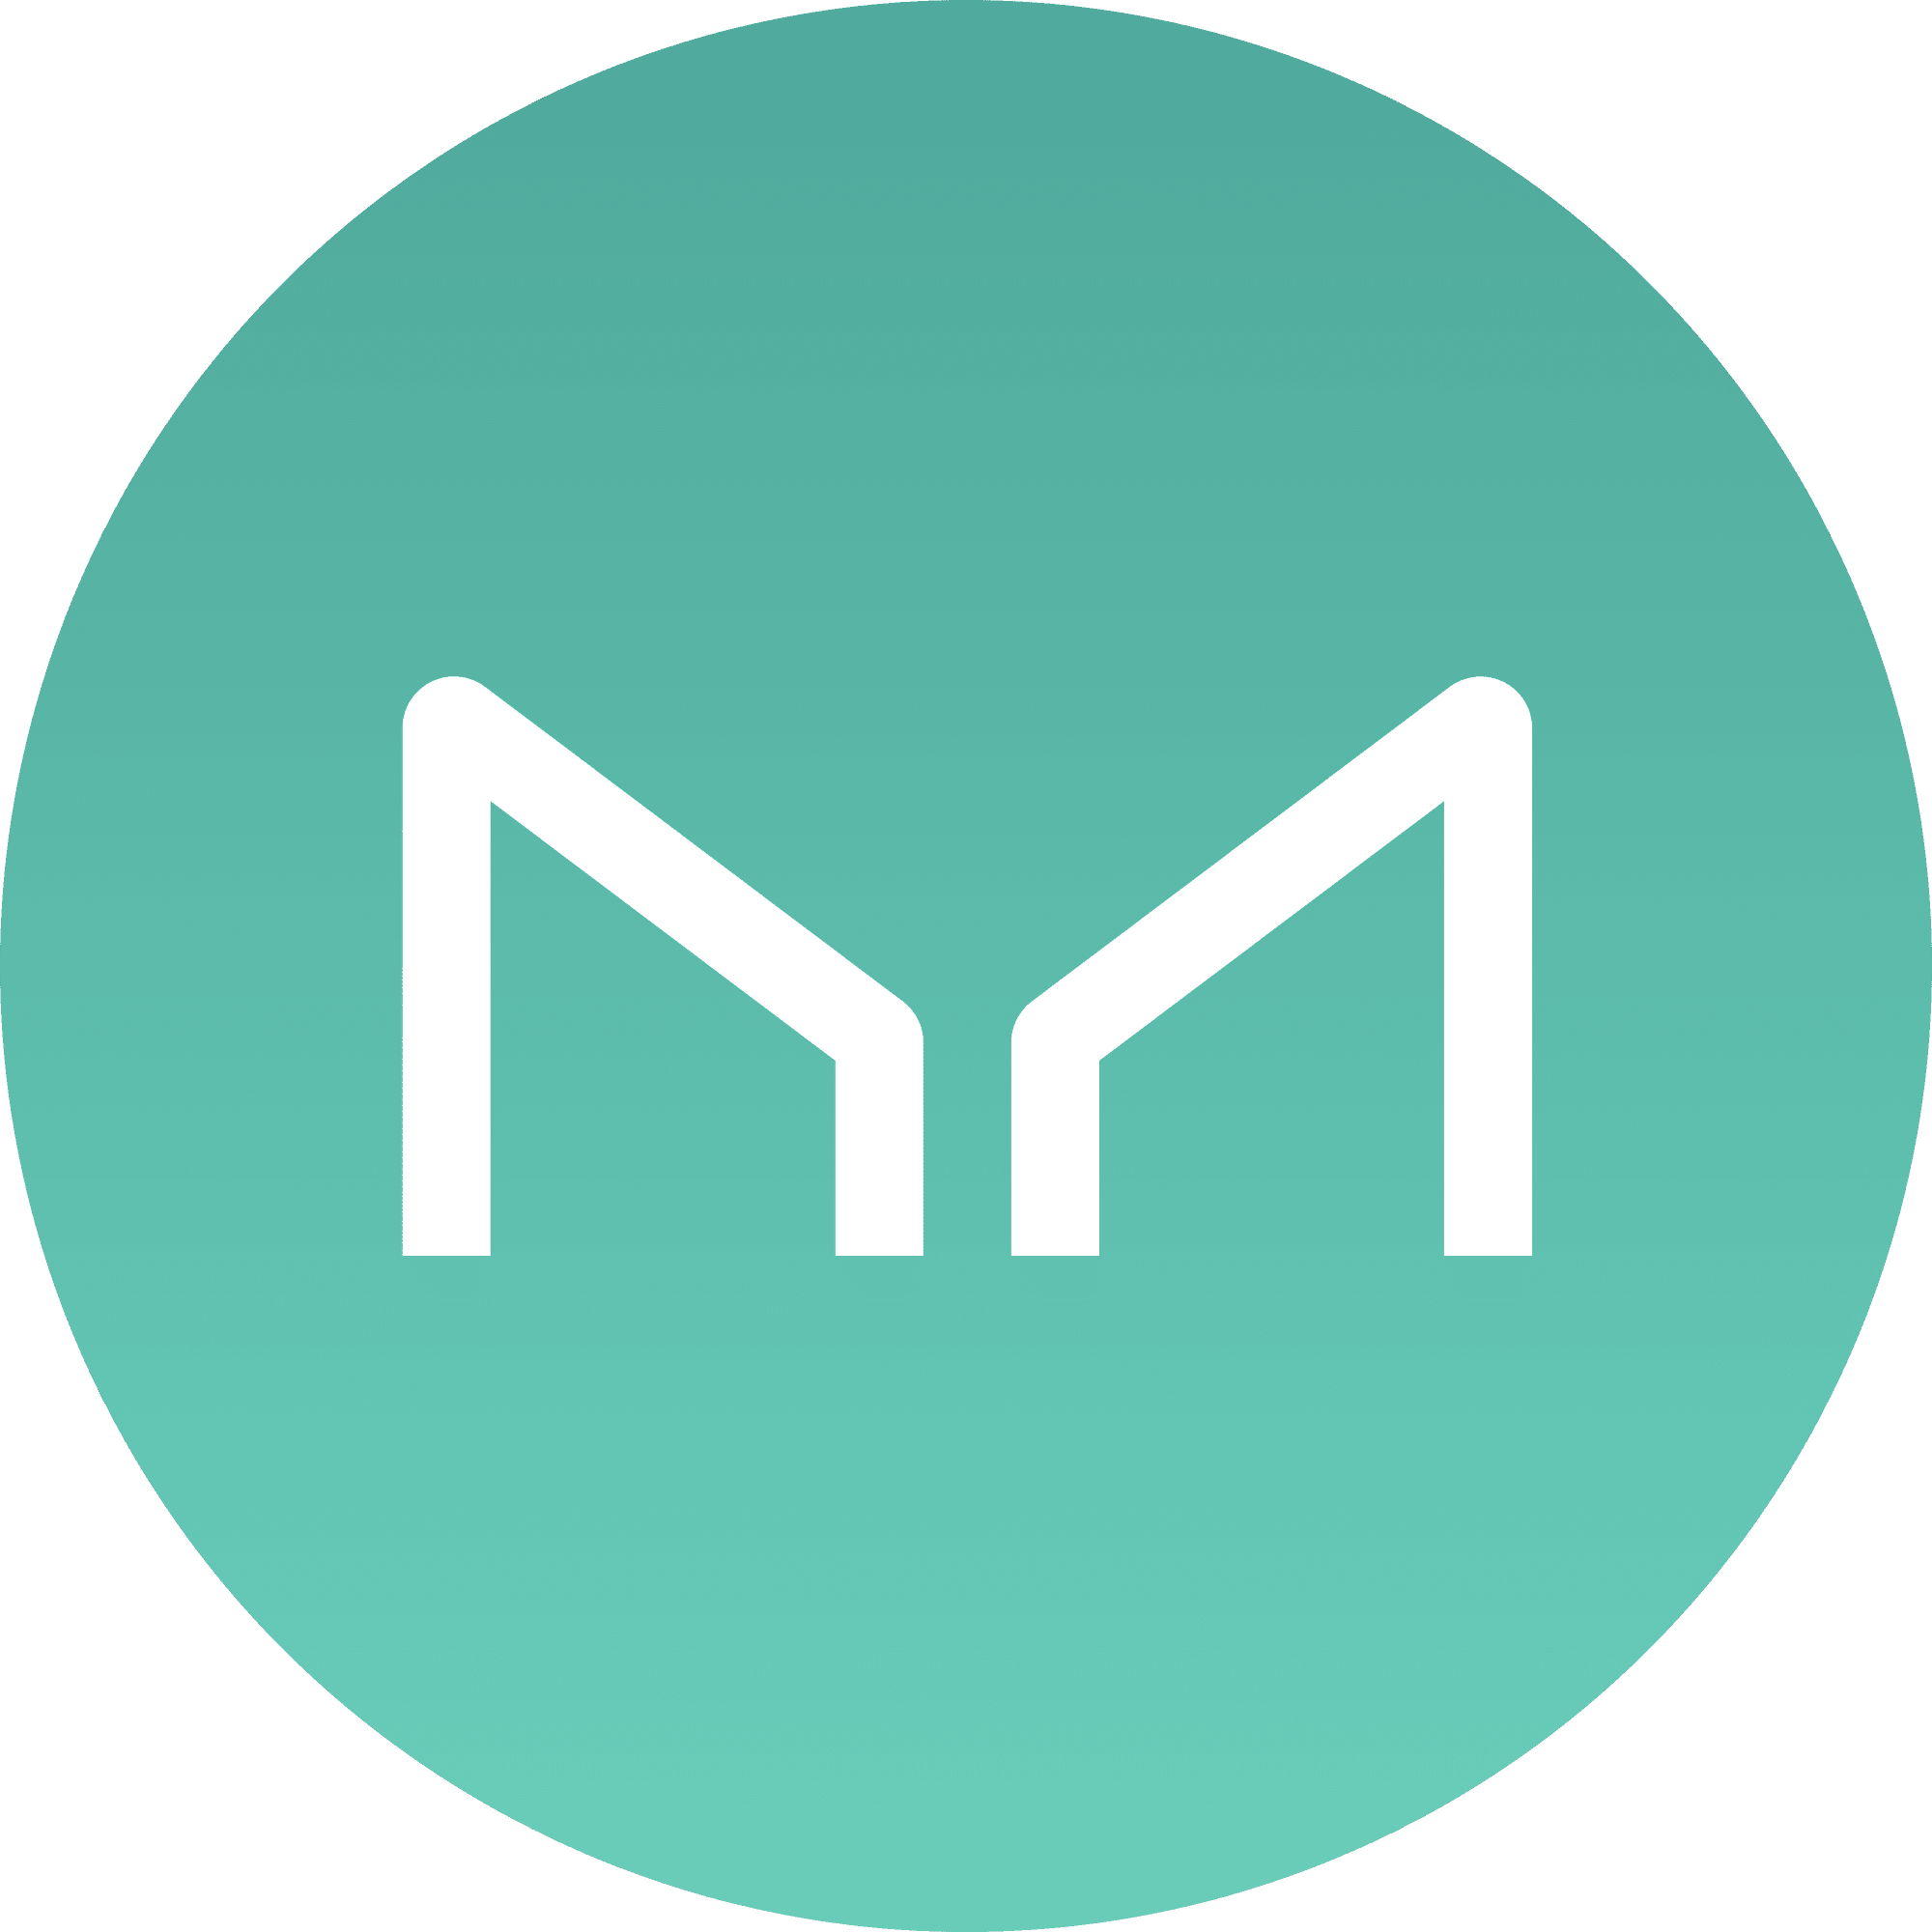 Maker logo in png format